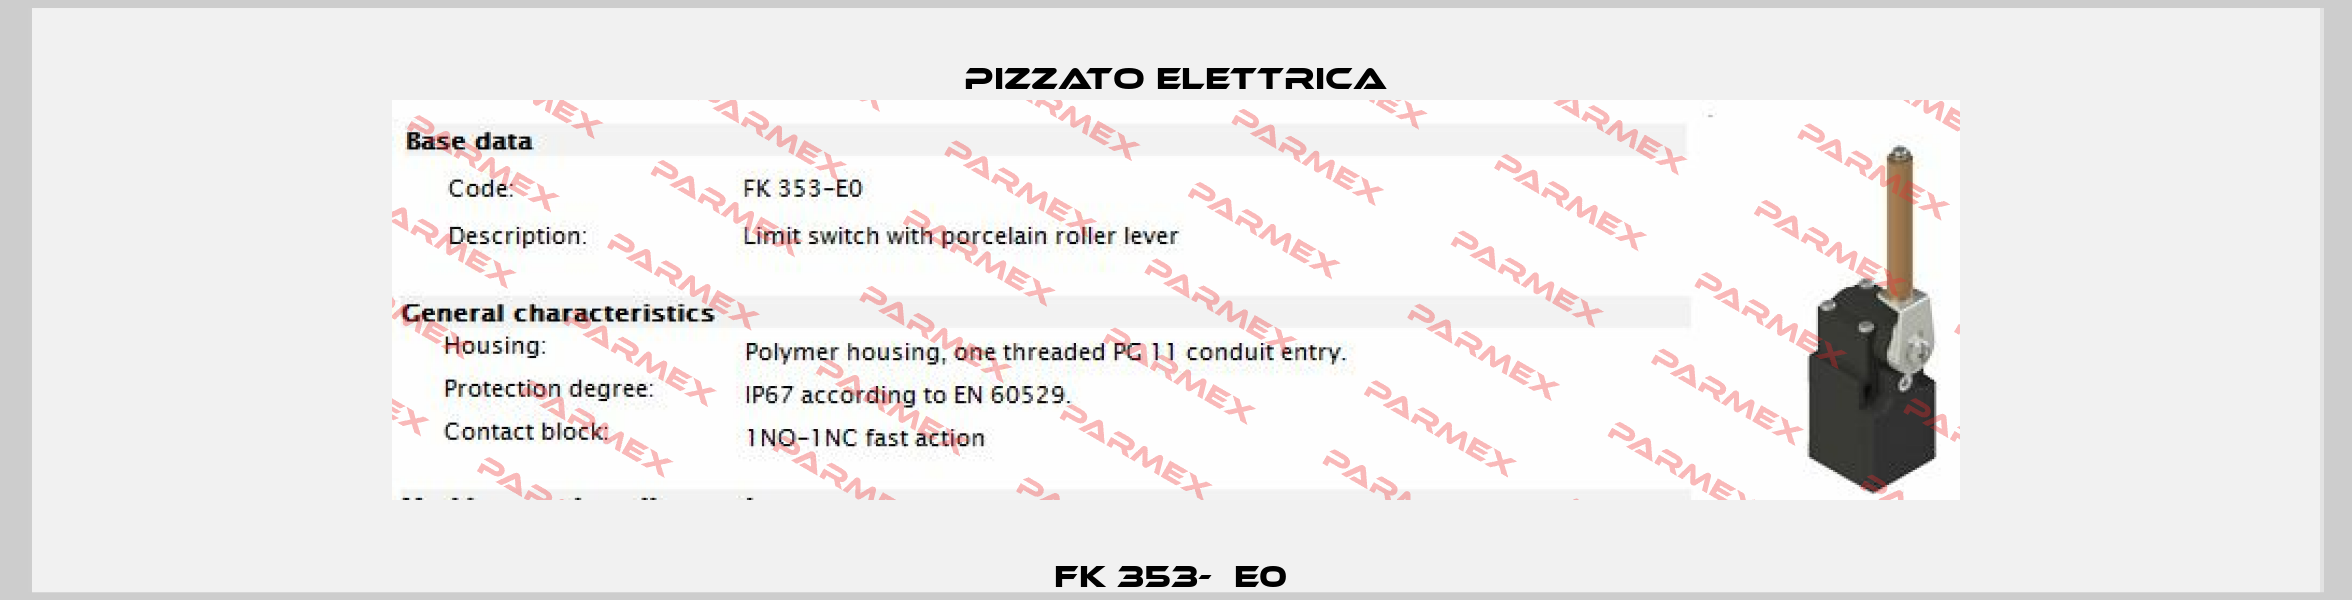 FK 353-⁠E0  Pizzato Elettrica